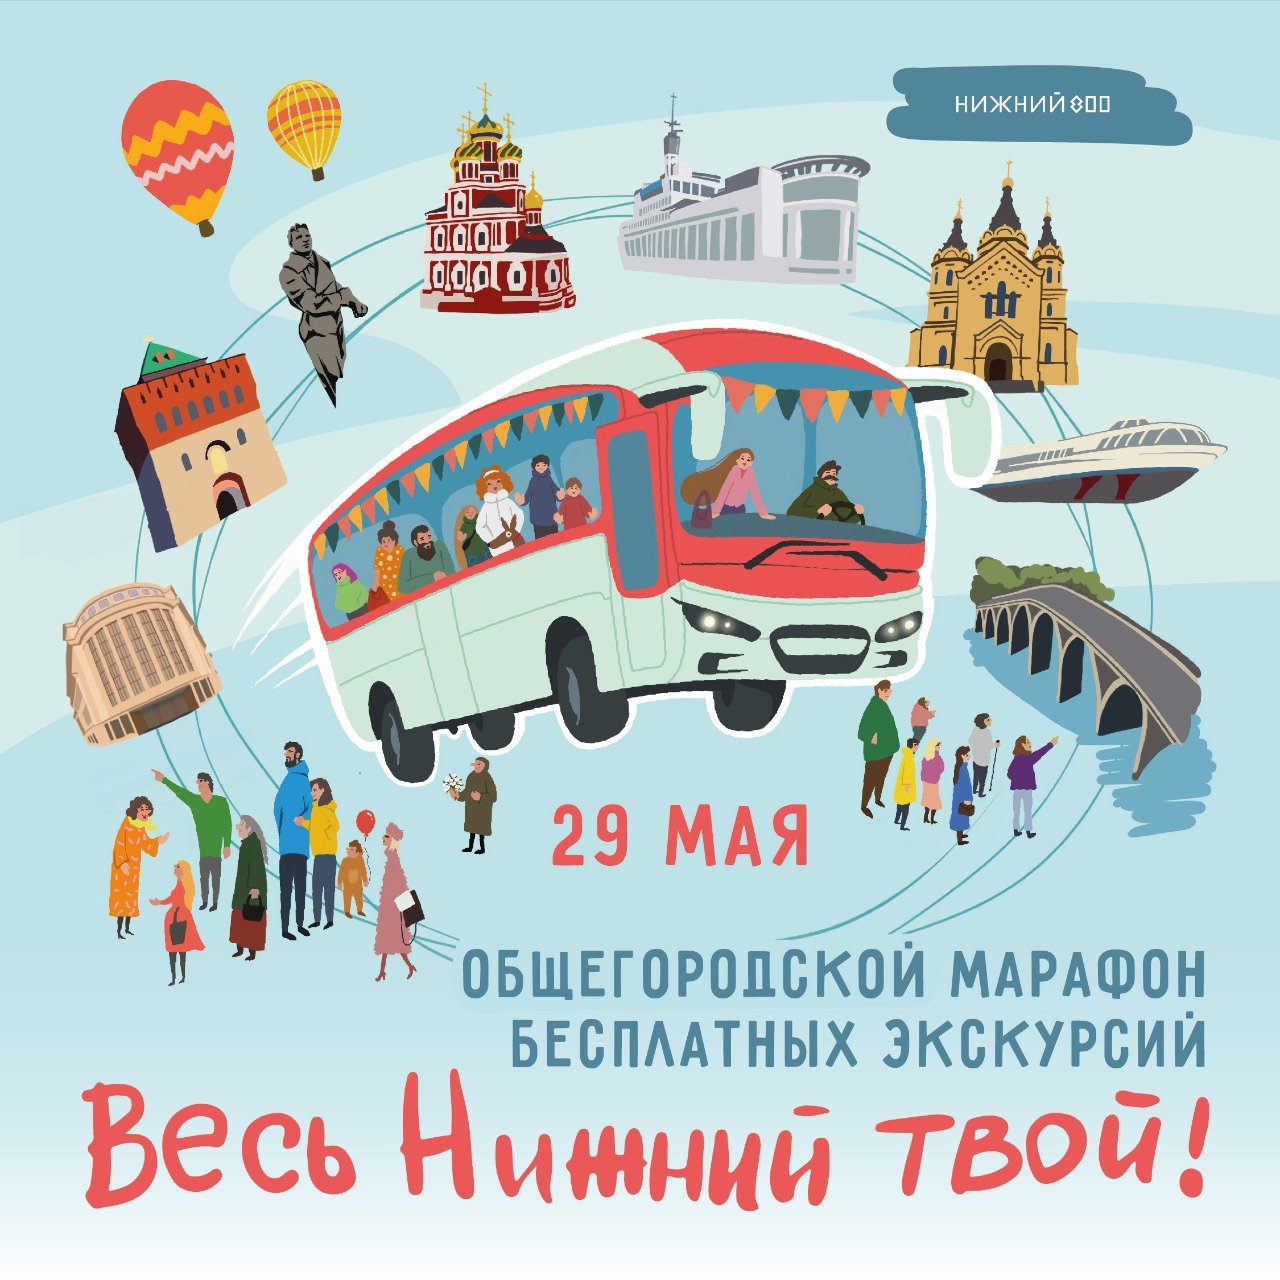 Бесплатный экскурсионный марафон пройдет в Нижнем Новгороде 29 мая 